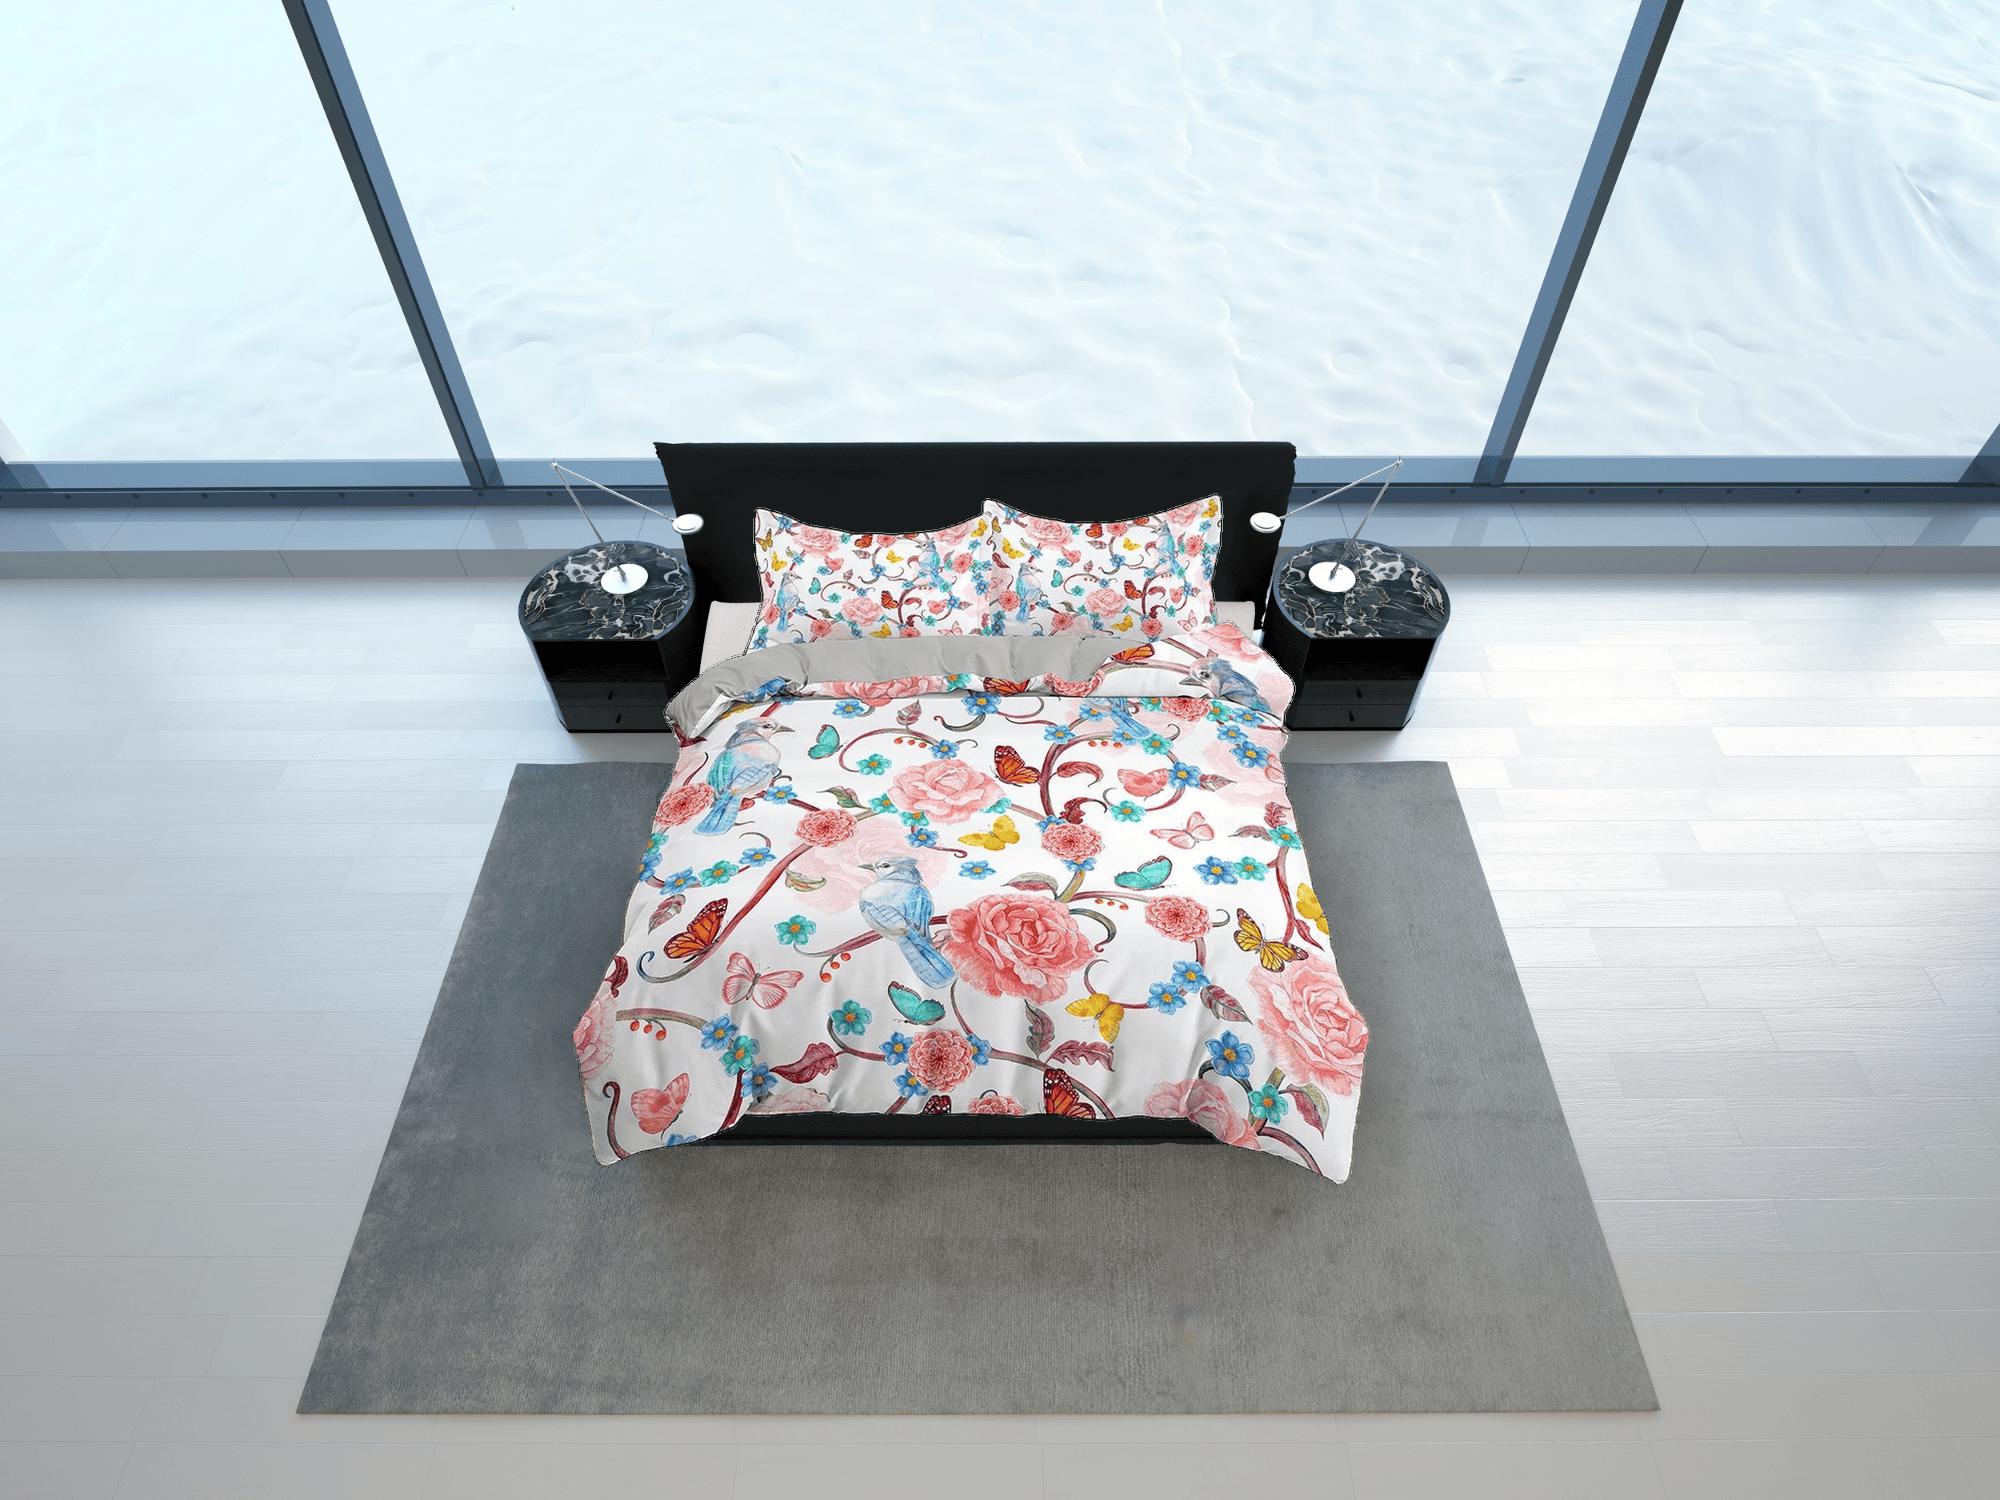 daintyduvet Hummingbird bedding, floral duvet cover queen, king, boho duvet, designer bedding, aesthetic bedding, maximalist full size bedding